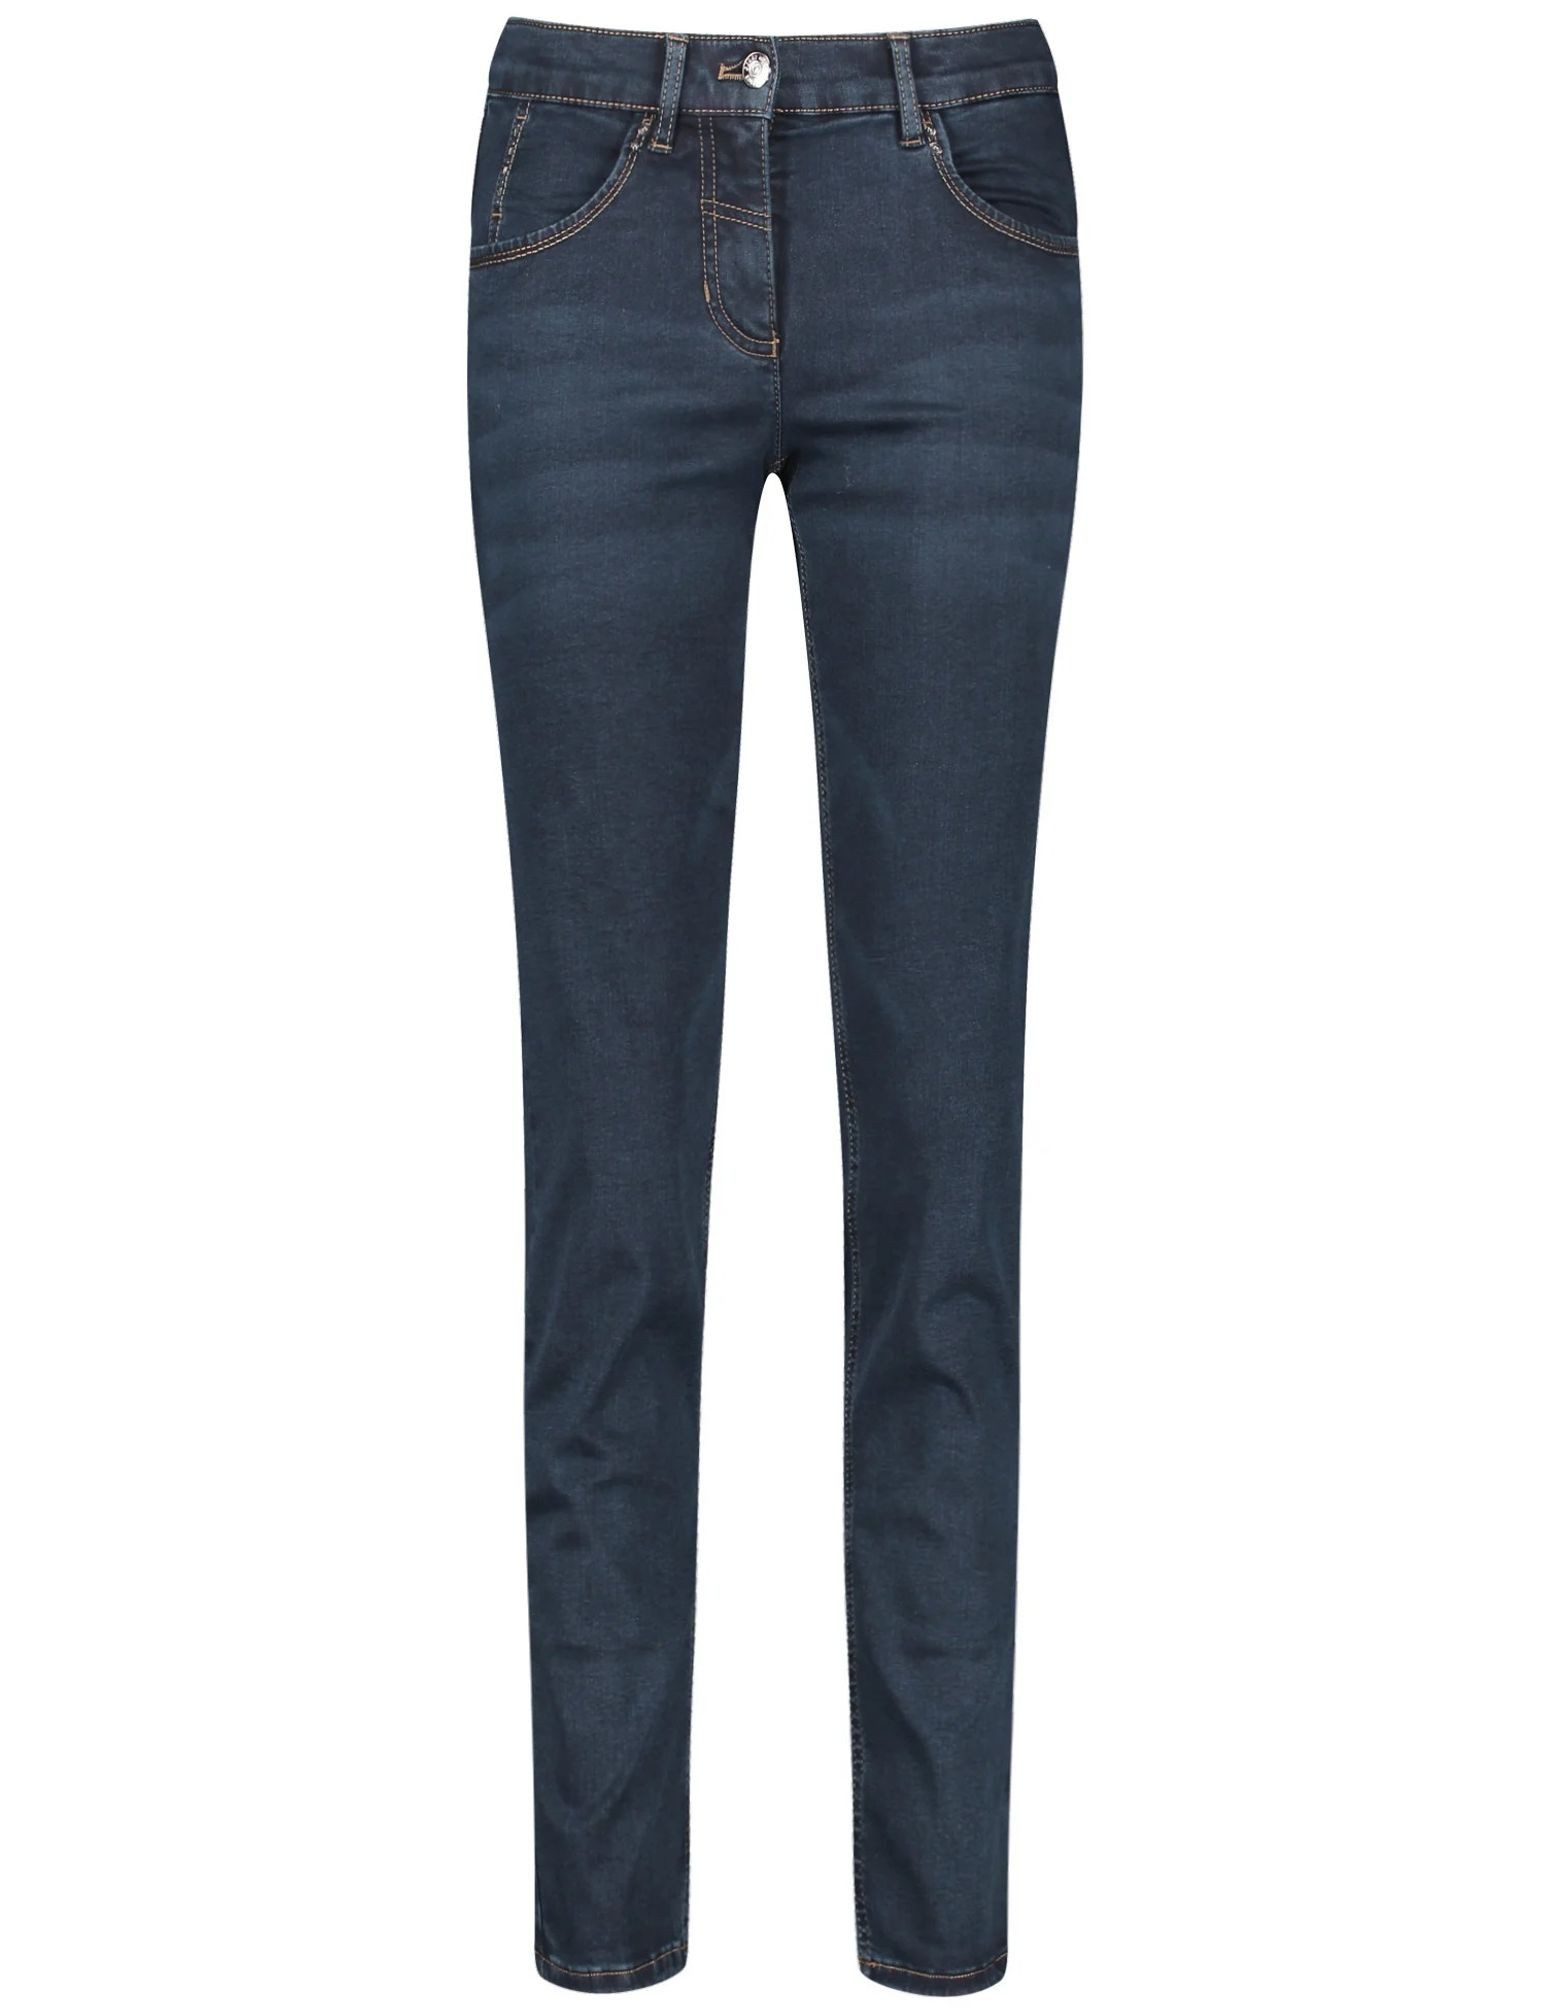 GERRY WEBER 5-Pocket-Jeans 122195-66888 Röhrenjeans